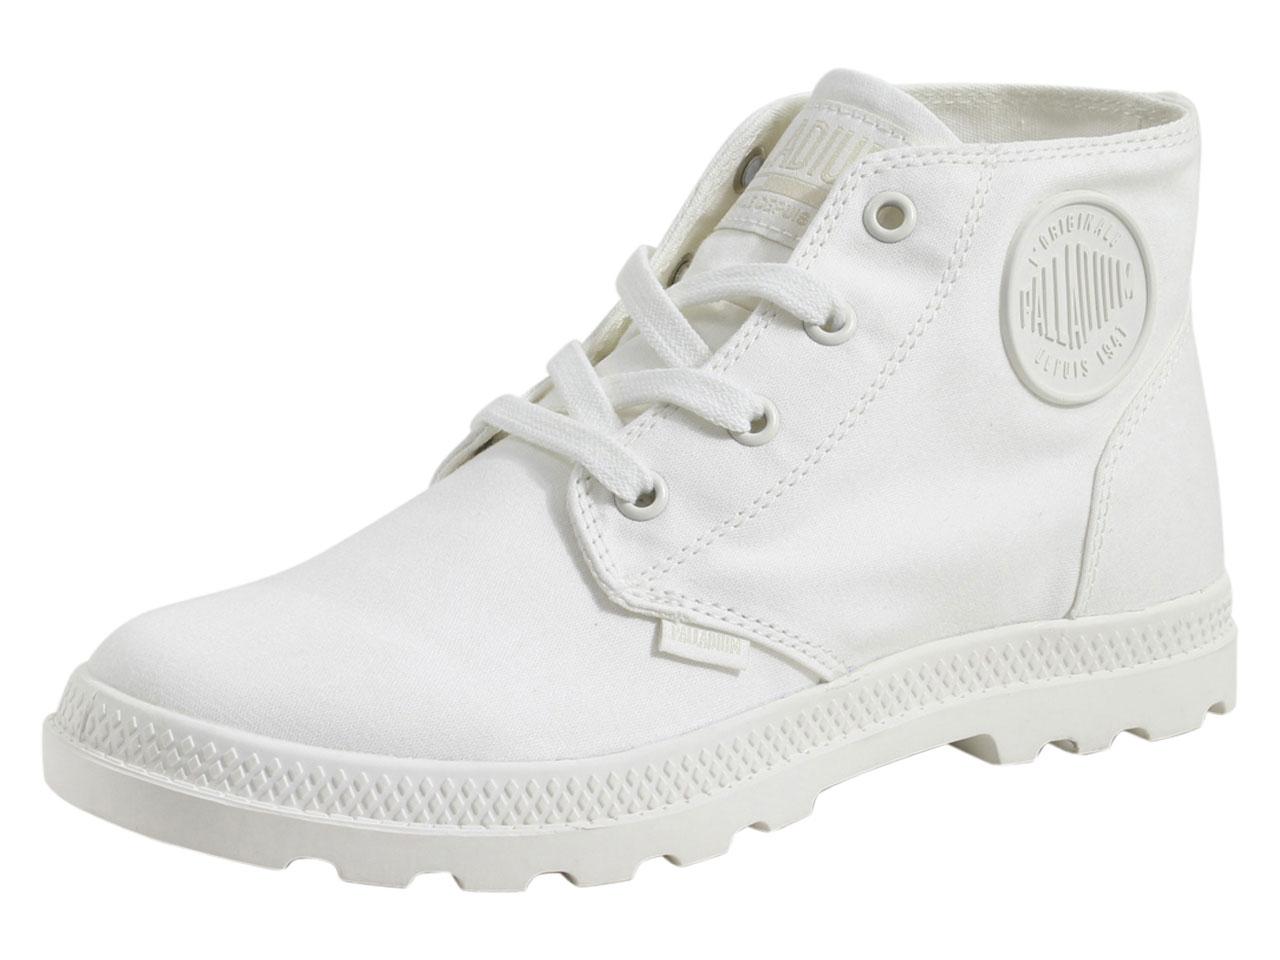 Palladium Women's Pampa Free Canvas Boots Shoes - White - 6.5 B(M) US